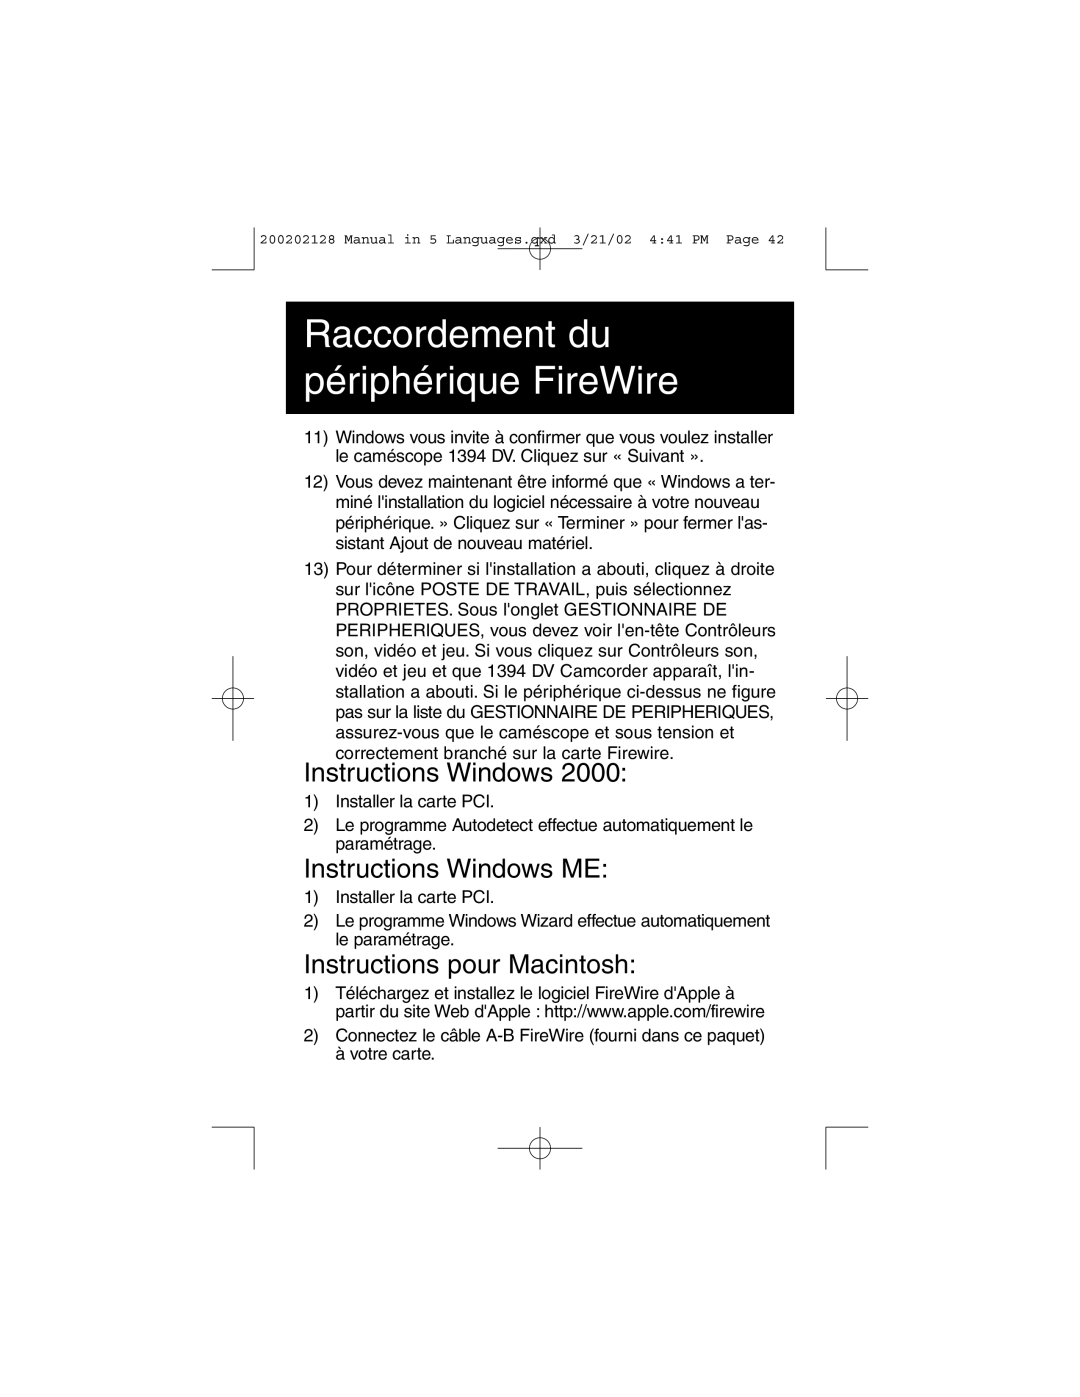 Tripp Lite F200-003-R Instructions Windows ME, Instructions pour Macintosh, Raccordement du périphérique FireWire 